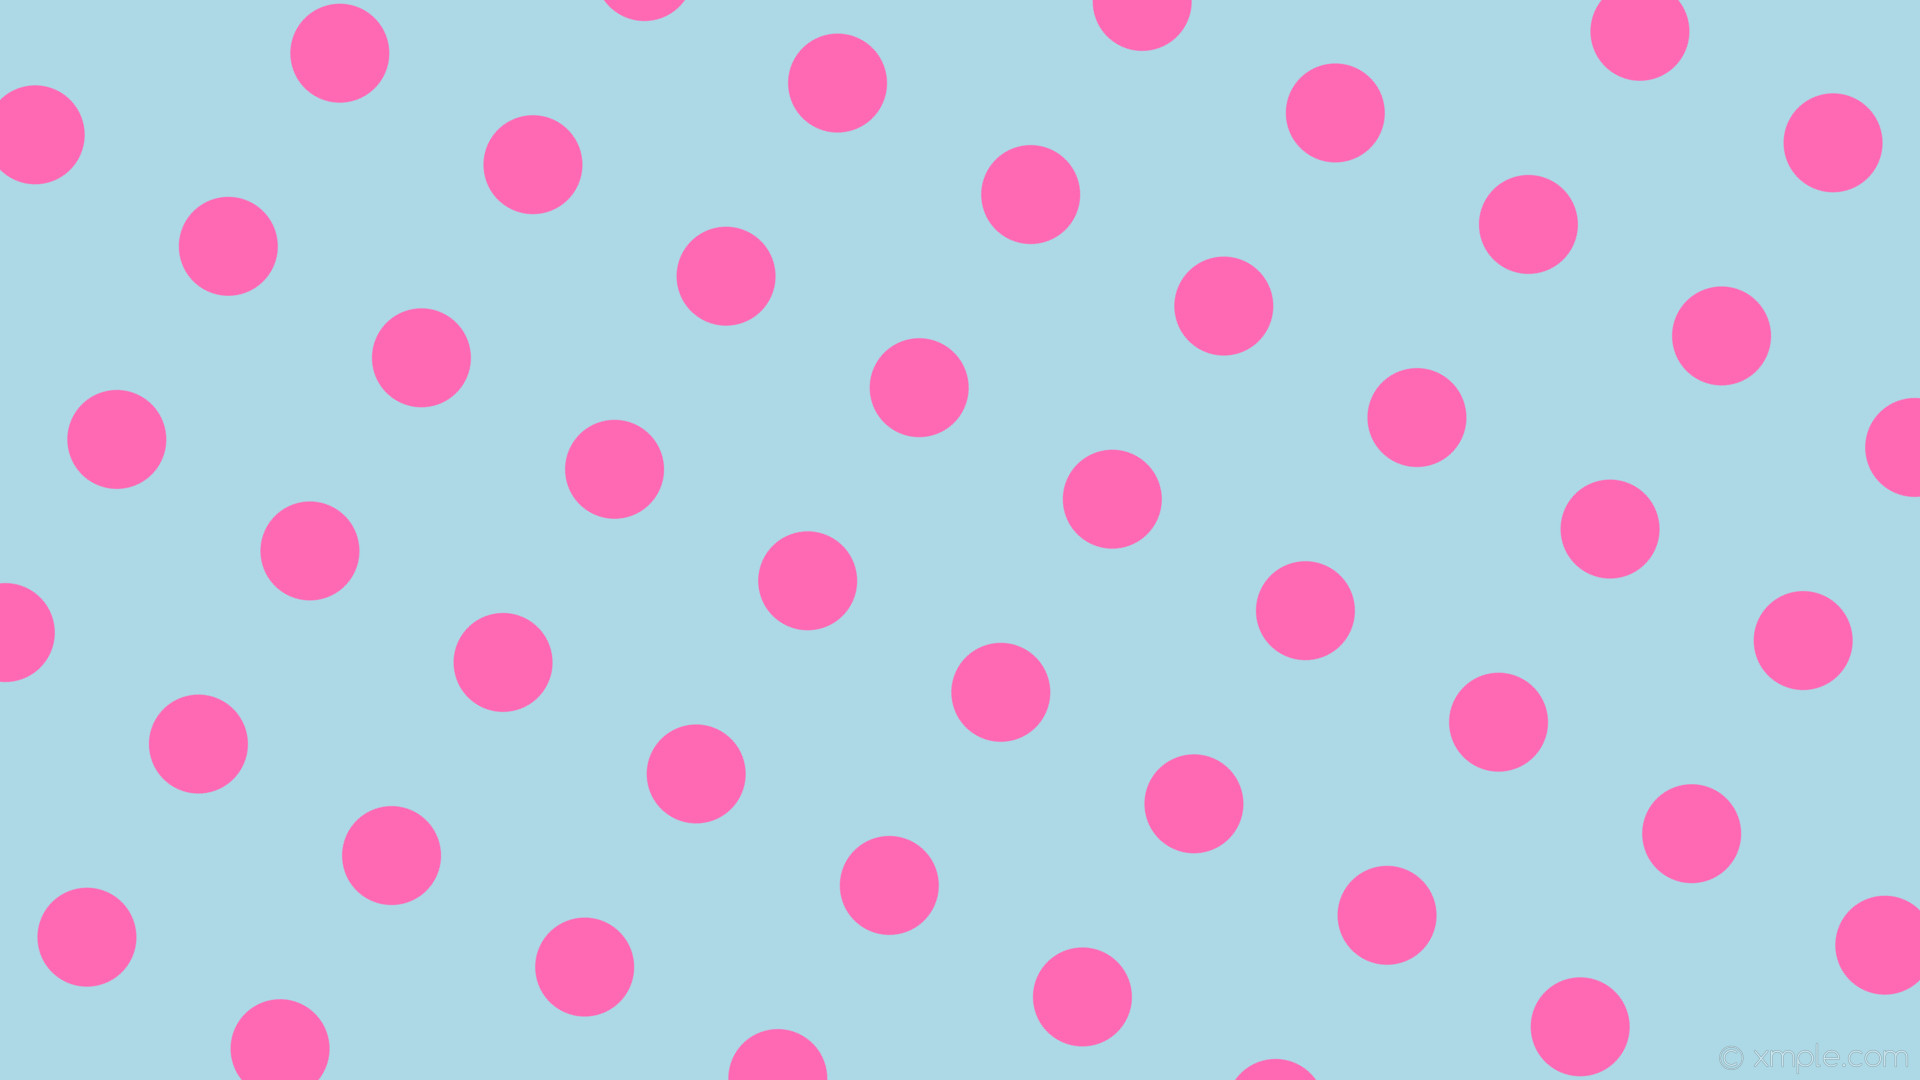 Wallpaper pink blue dots polka spots light blue hot pink #add8e6 #ff69b4 150